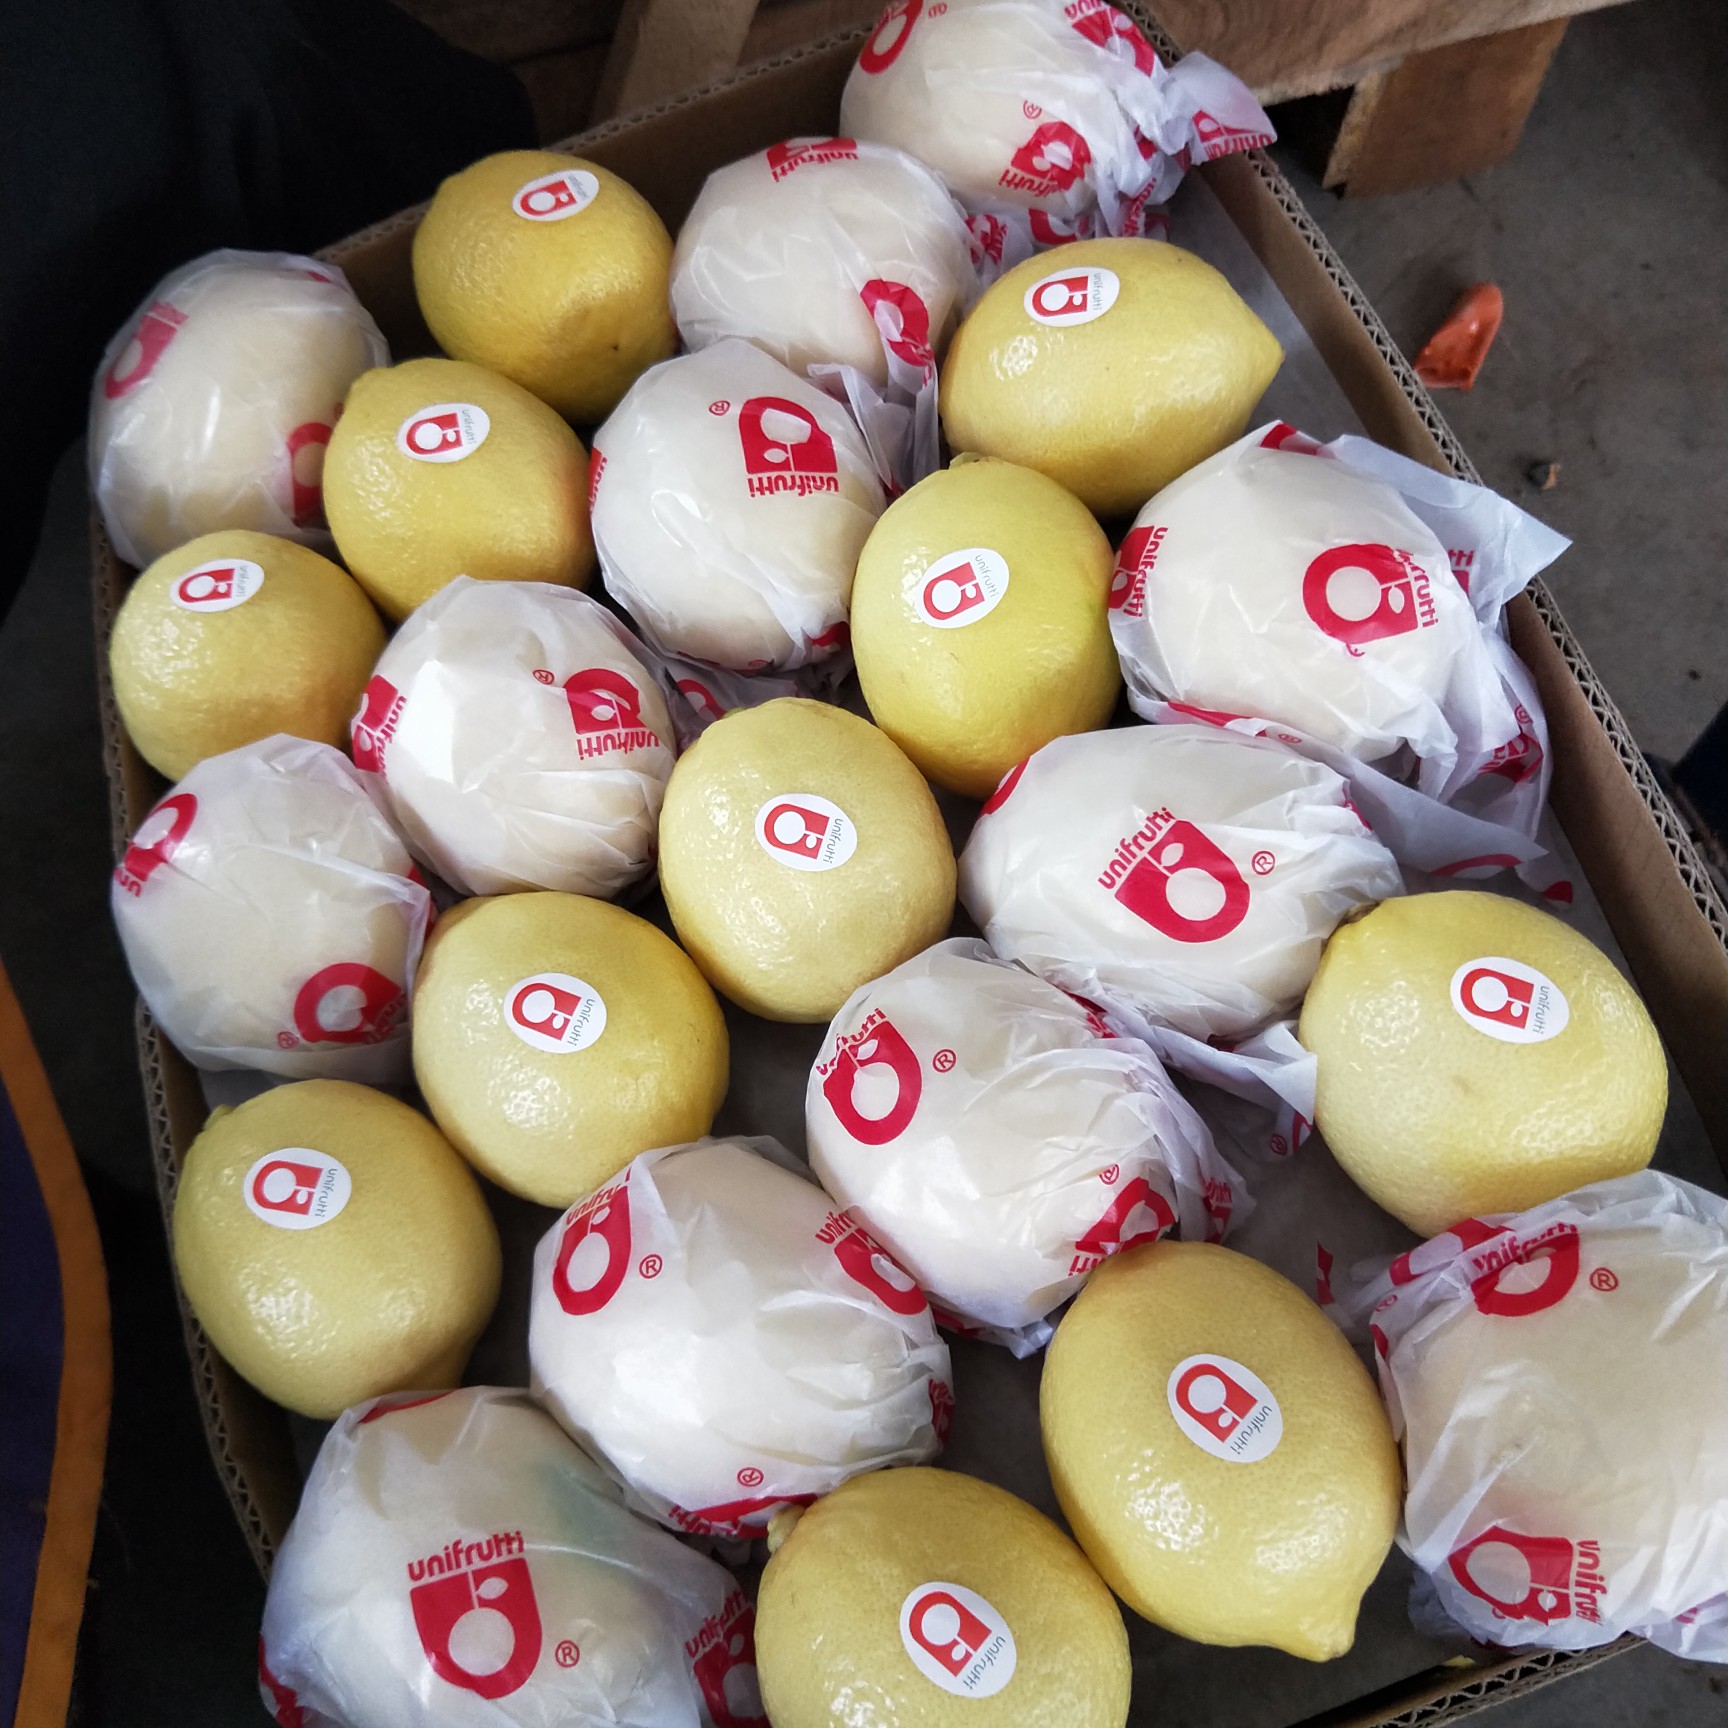 安岳县尤力克当季新柠檬果品新鲜，带箱20斤装，净重18斤一箱，